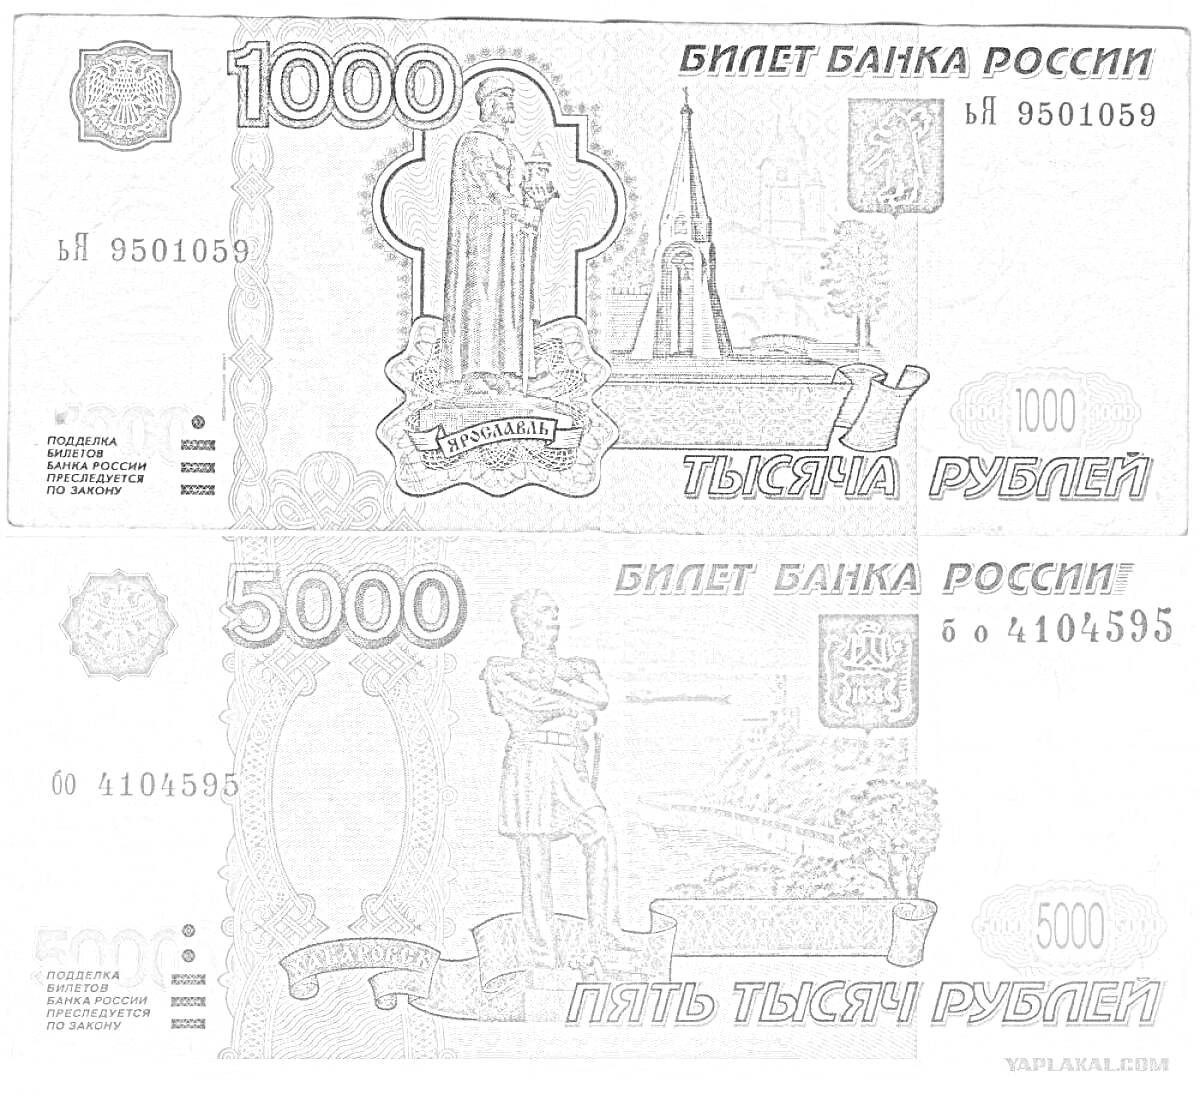 Раскраска банкнот номиналом 1000 и 5000 рублей с изображениями памятника и архитектурных объектов